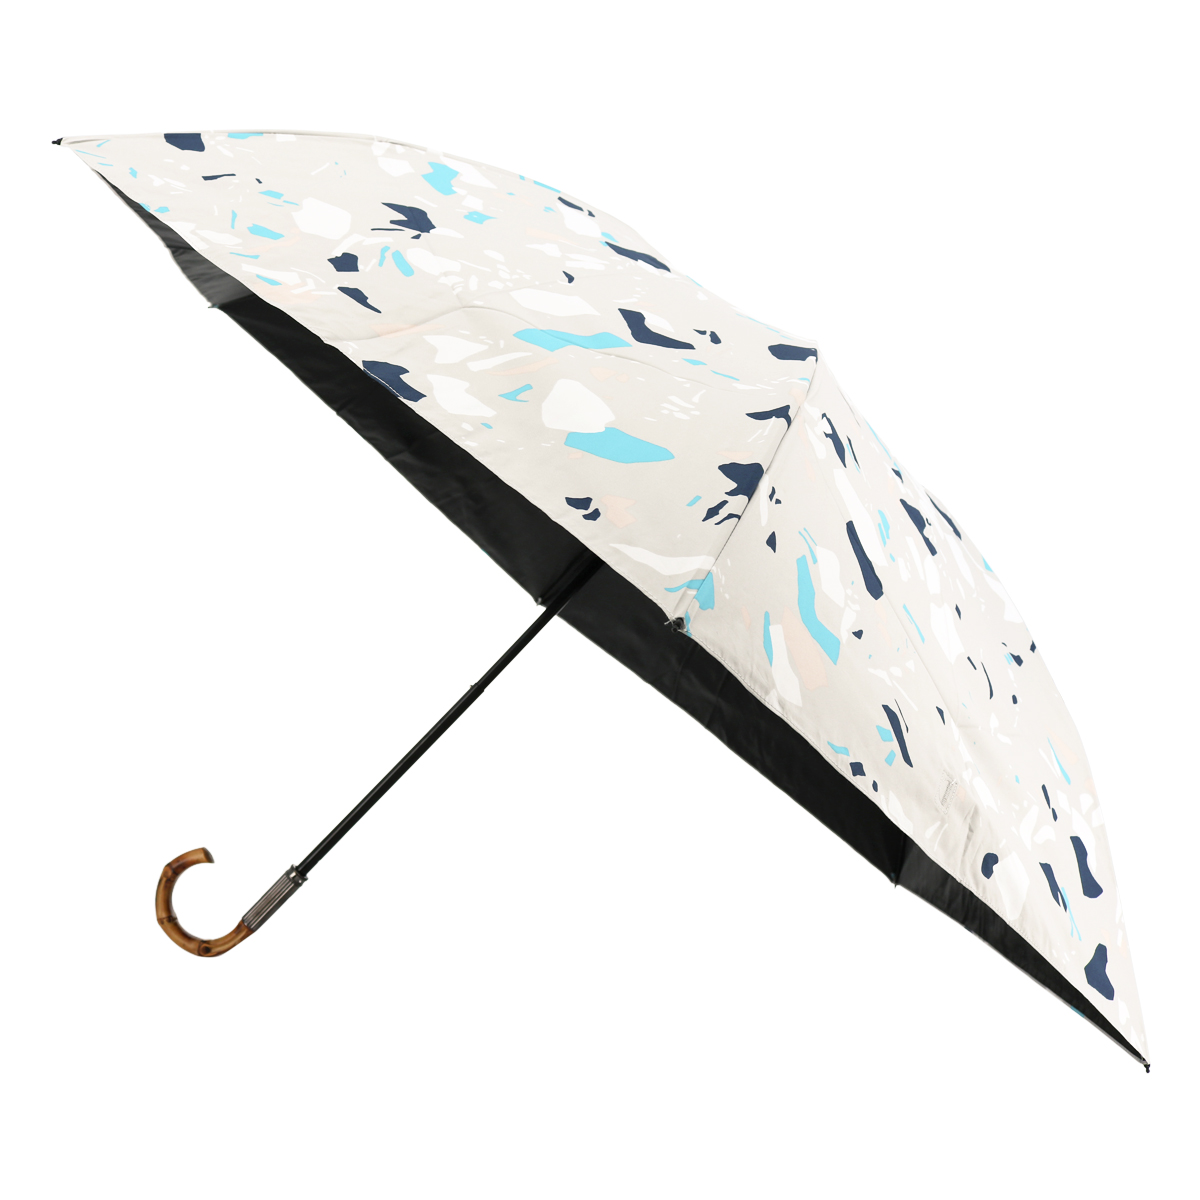 ジルスチュアート 折りたたみ傘 レディース 1JI 17737-37 JILLSTUART ギフト プレゼント 晴雨兼用 日傘 雨傘 UVカット 遮光  遮熱 軽量 ブランド 90-99cm